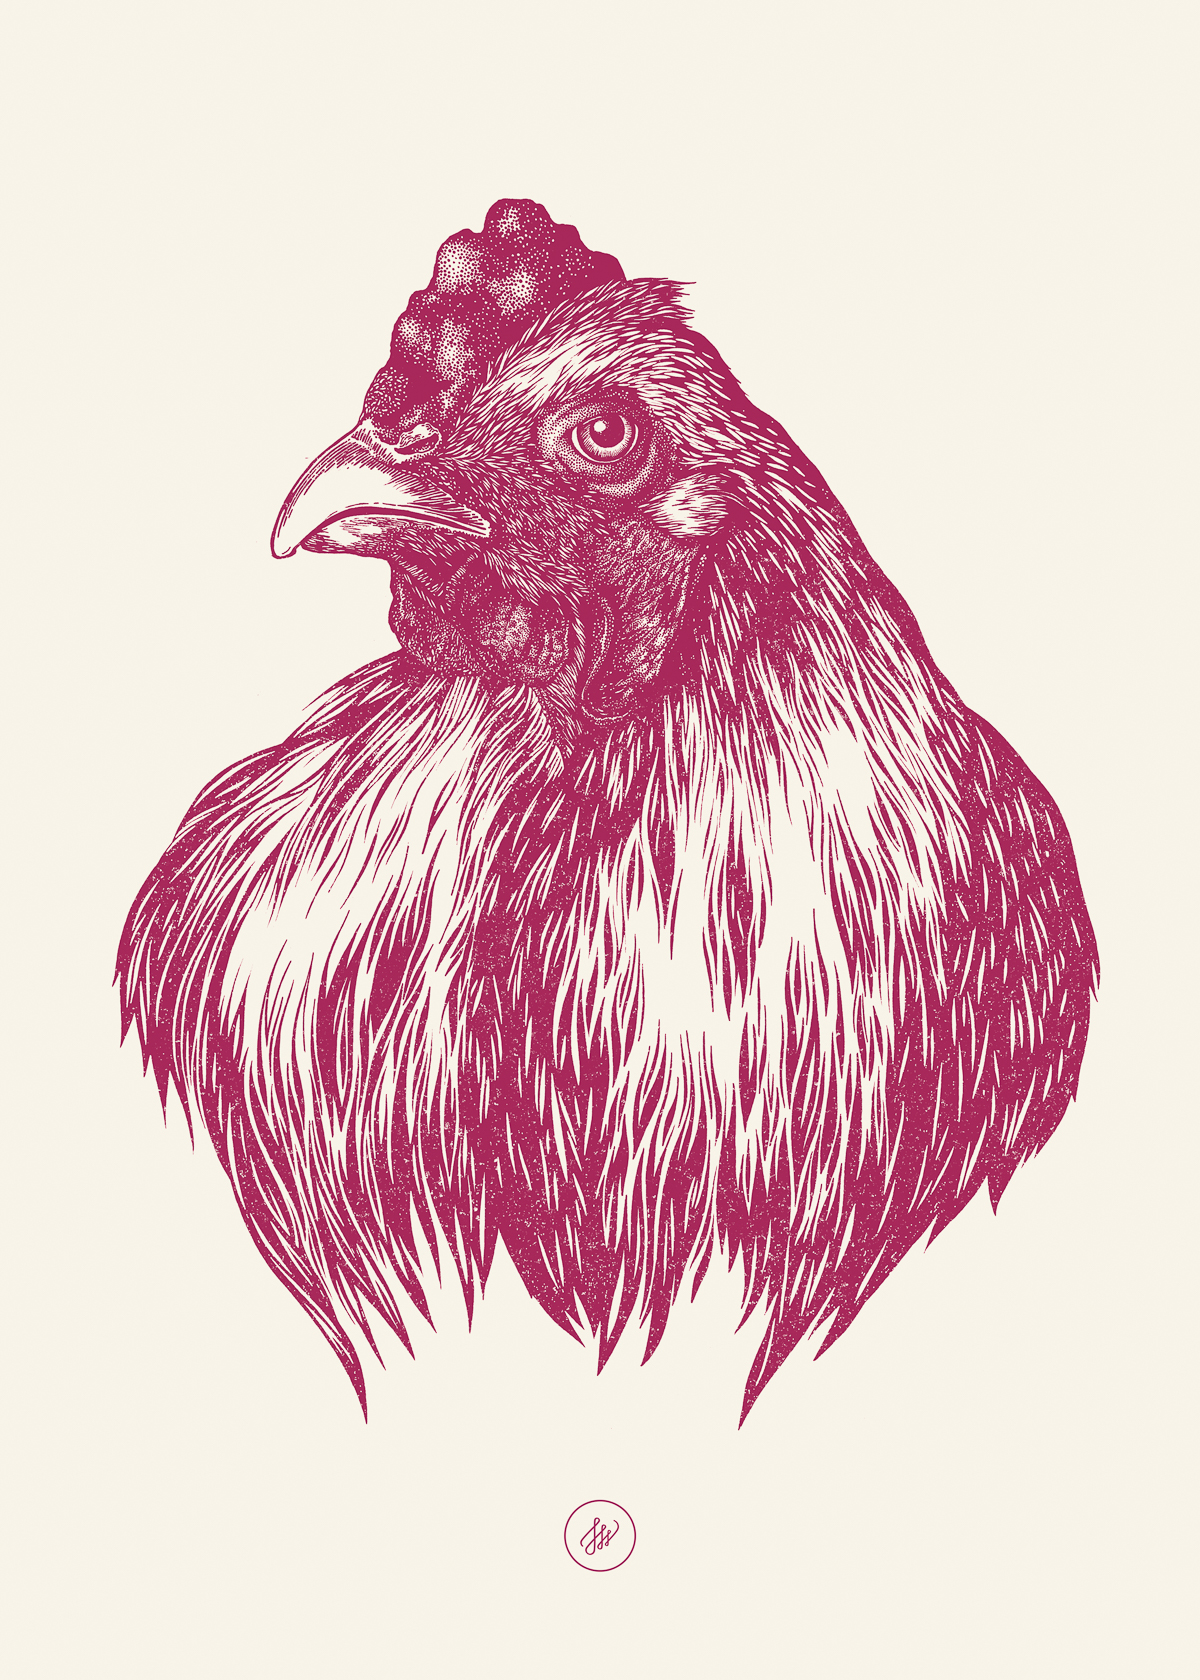 hen ink bird illustraton etching chicken poultry